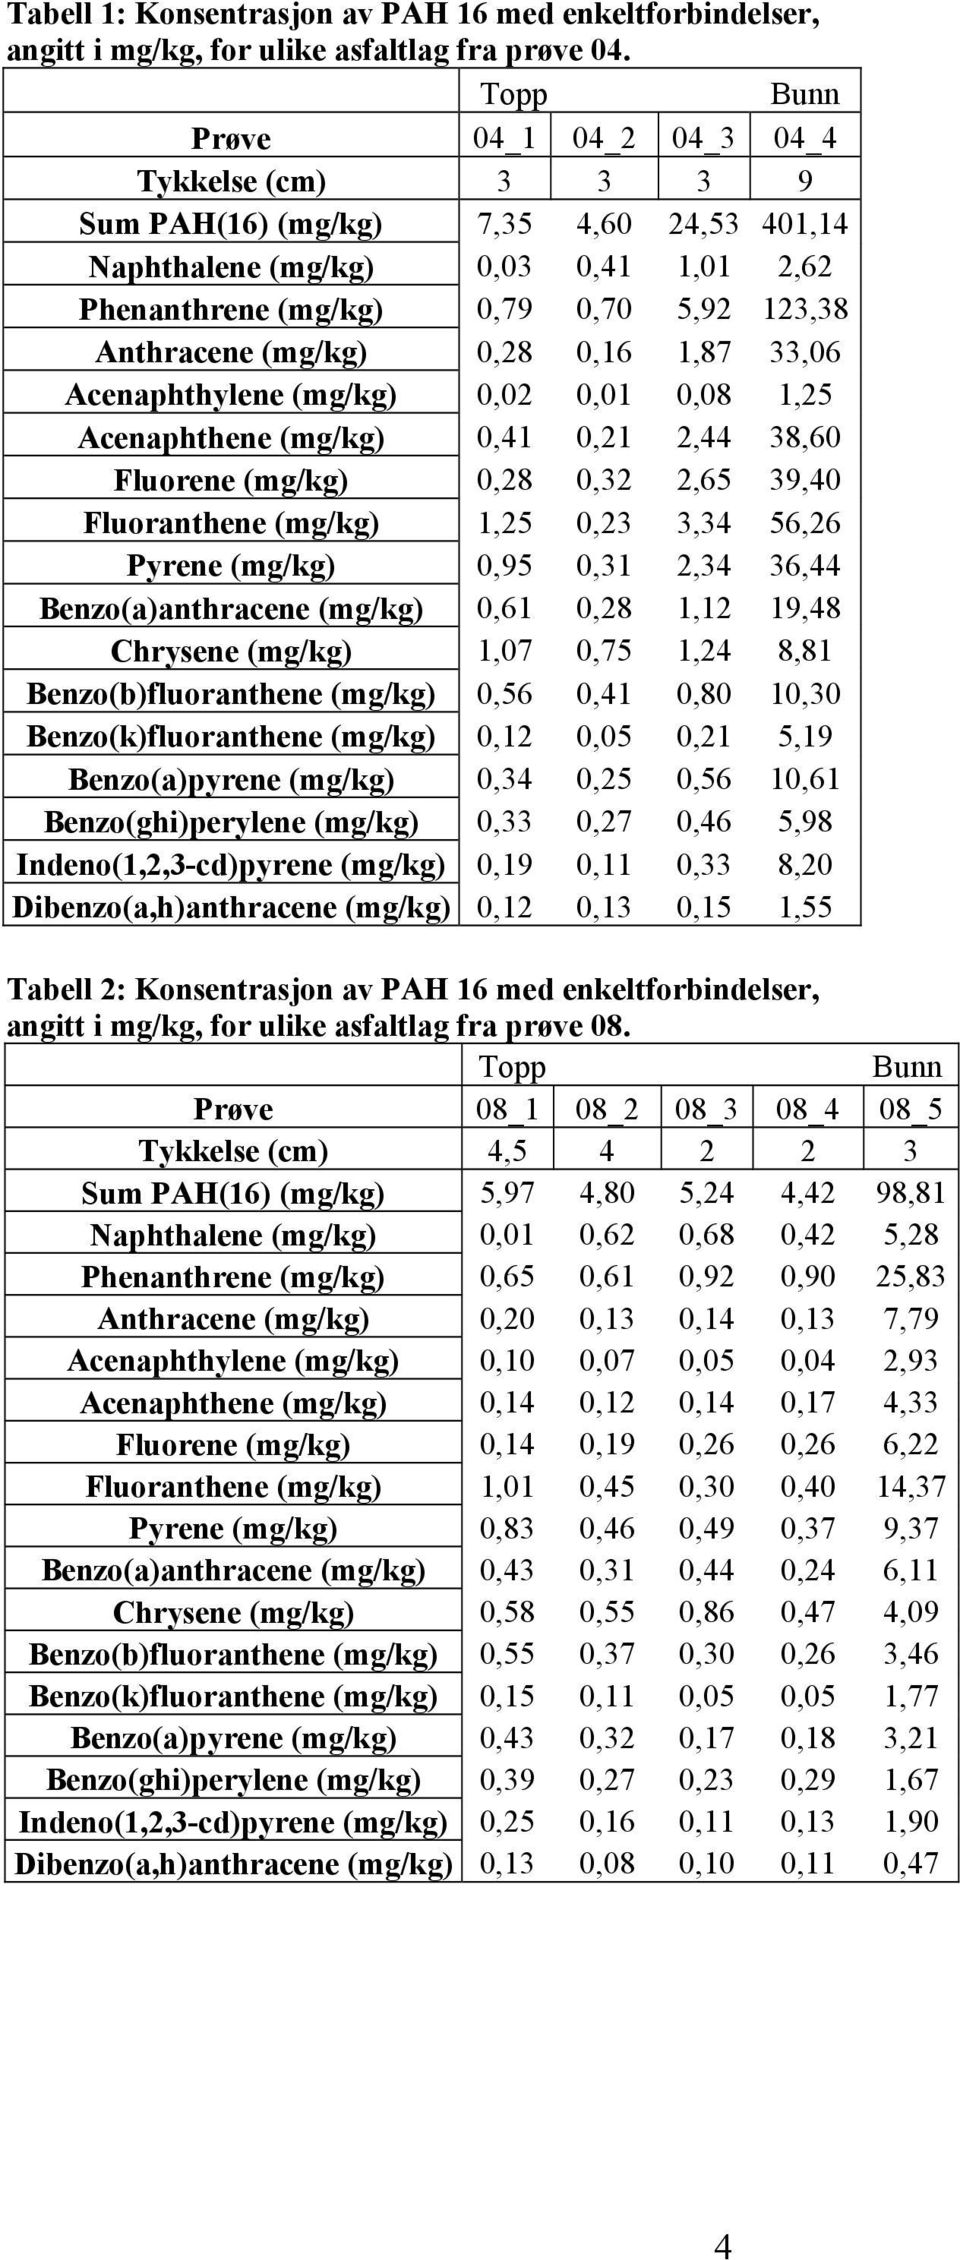 (mg/kg) 0,28 0,16 1,87 33,06 Acenaphthylene (mg/kg) 0,02 0,01 0,08 1,25 Acenaphthene (mg/kg) 0,41 0,21 2,44 38,60 Fluorene (mg/kg) 0,28 0,32 2,65 39,40 Fluoranthene (mg/kg) 1,25 0,23 3,34 56,26